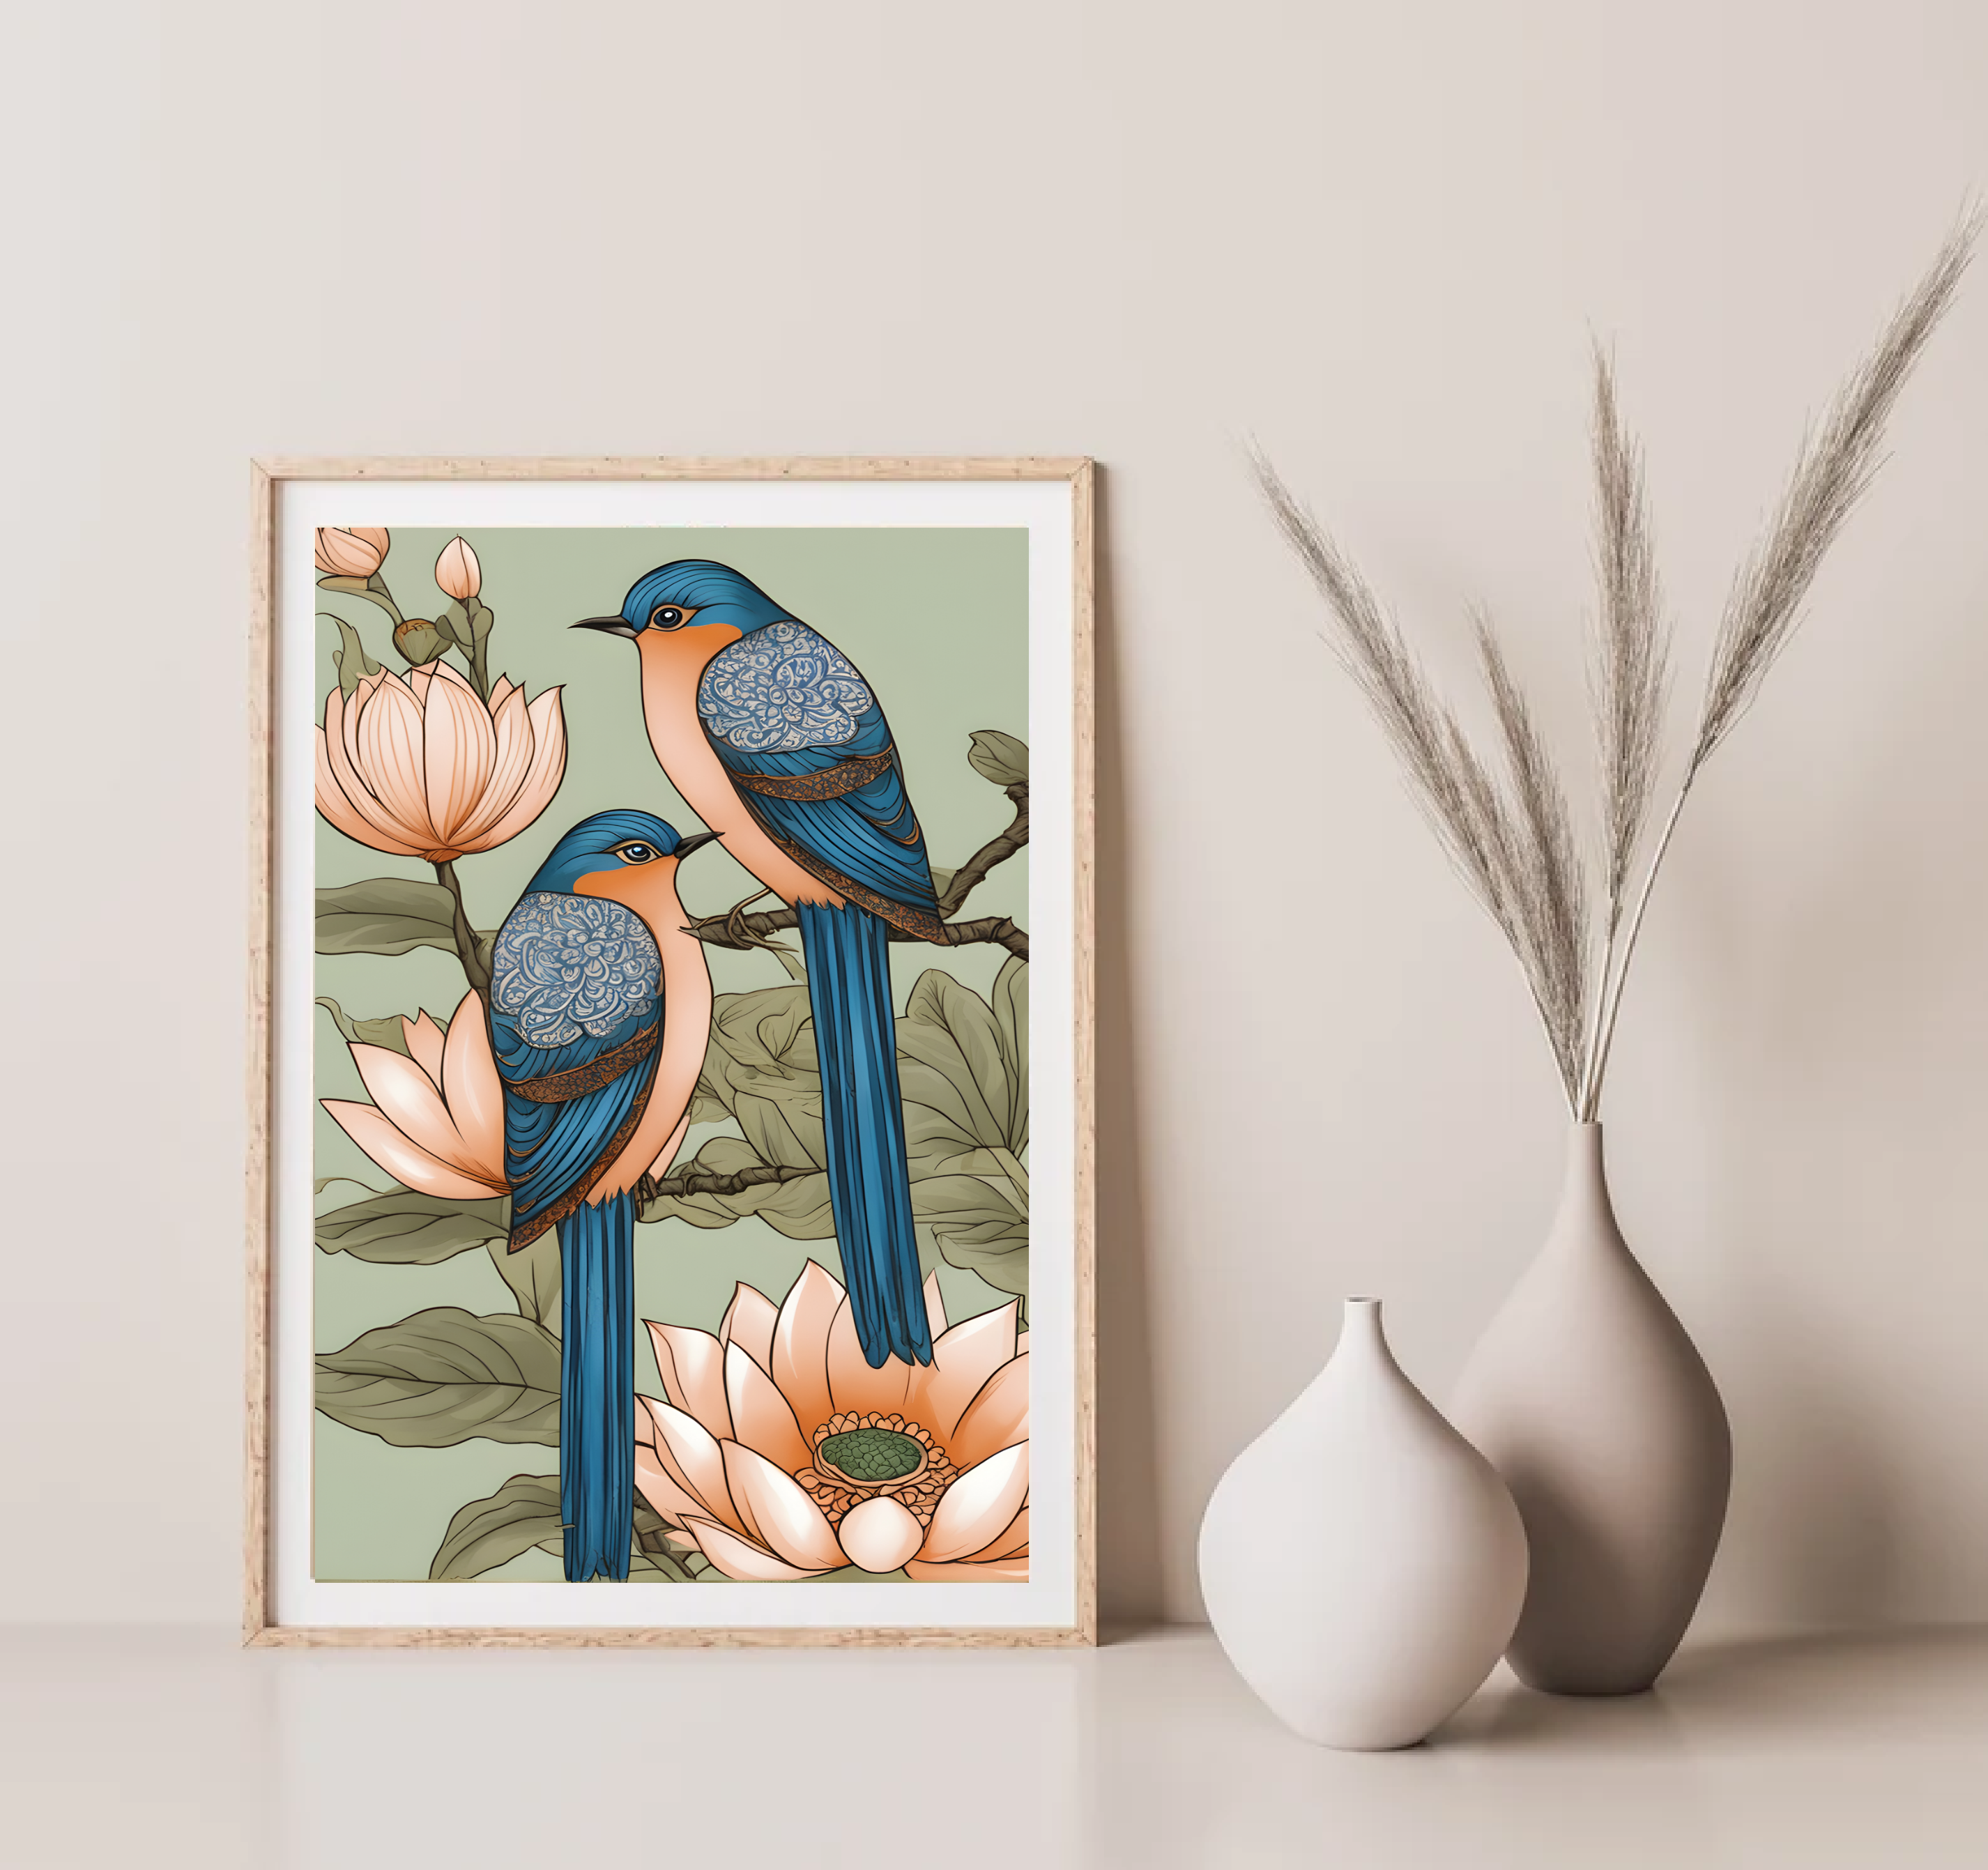 Indian Art, Indian traditional Blue Bird Art Print, Folk Art, Floral Bird Art